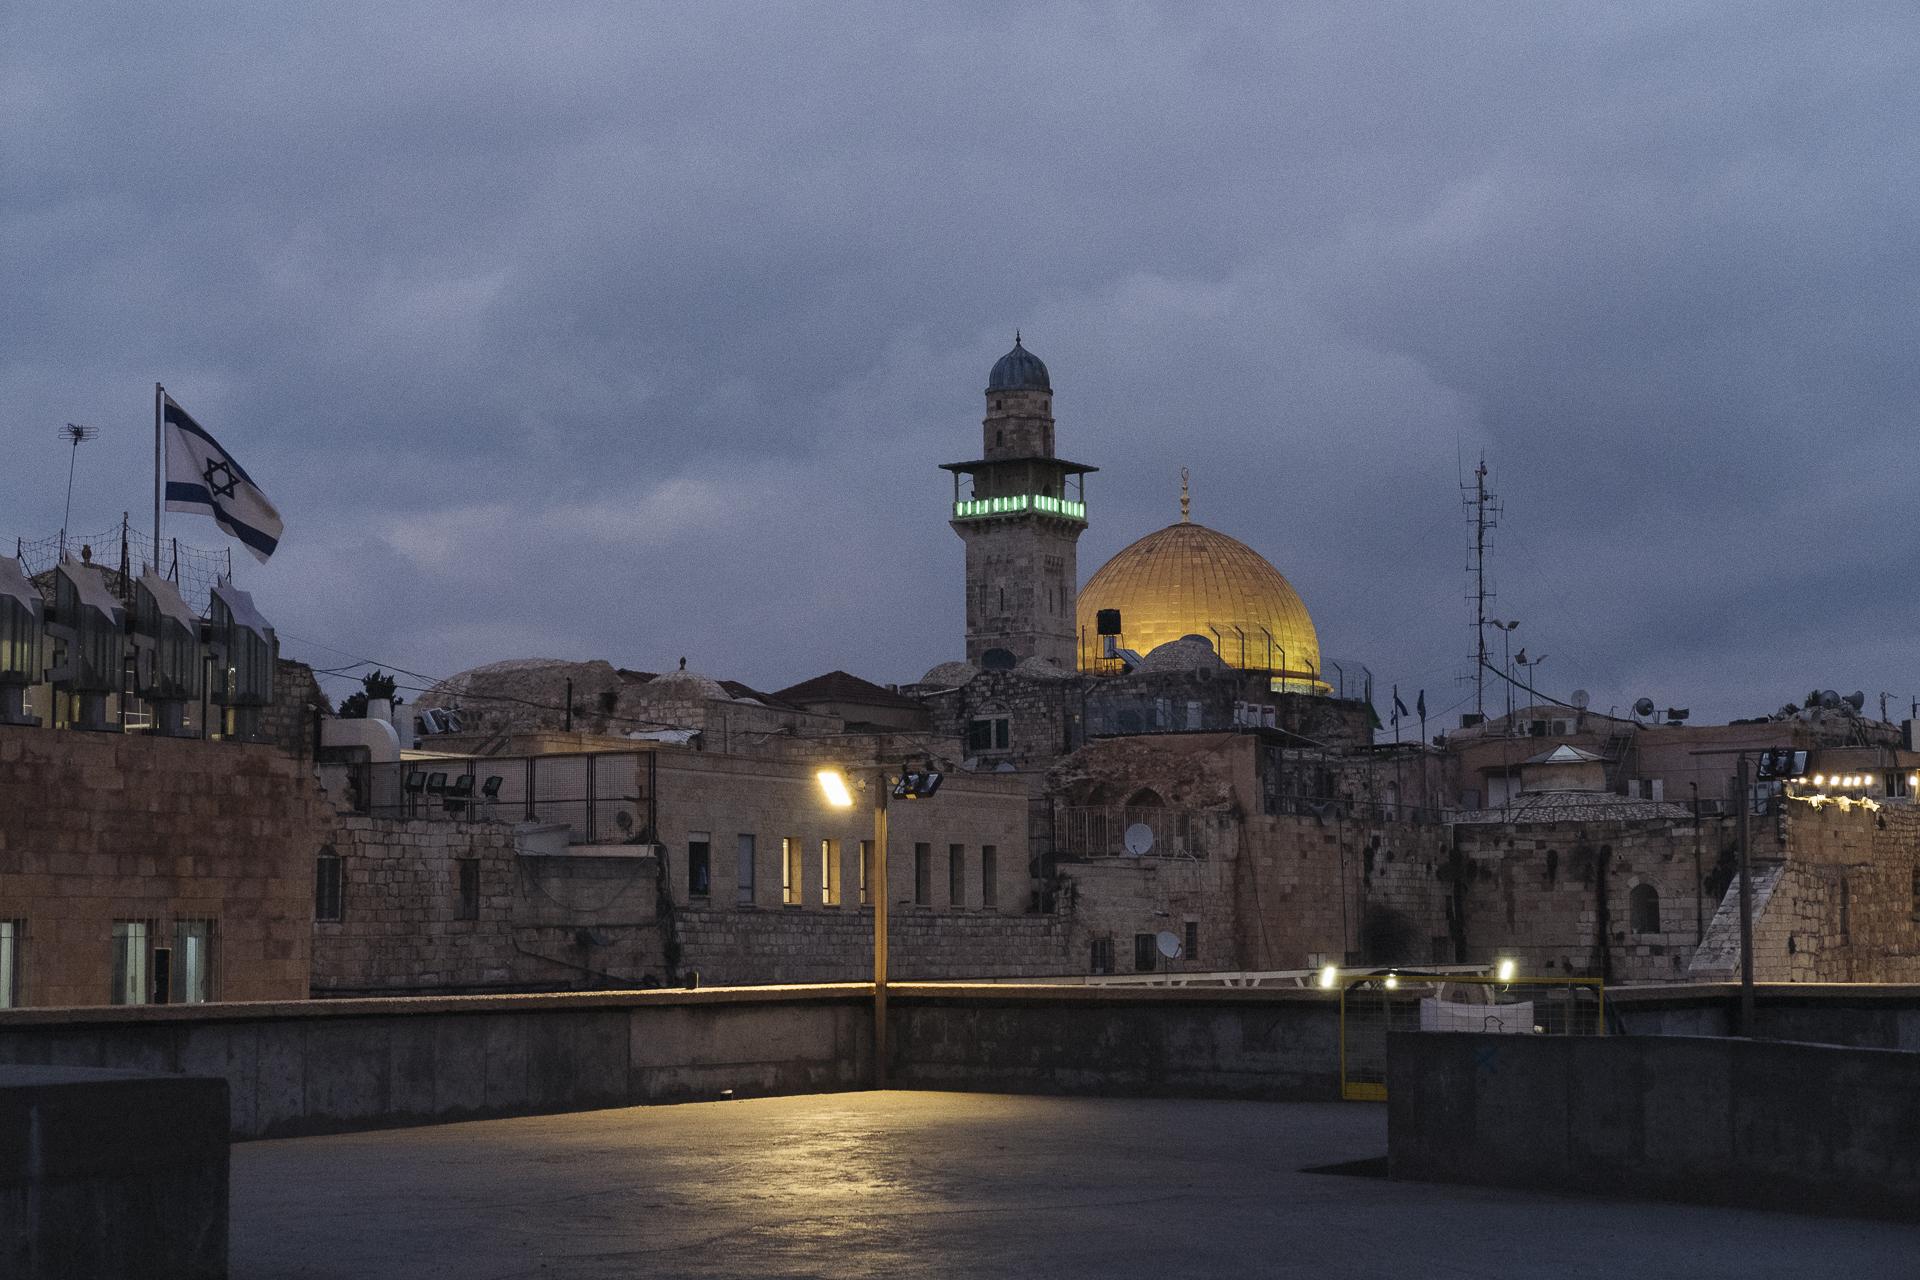 Au nom de tous les Saints - Dome of the Rock. Jerusalem, February 11, 2020.
Dome du...